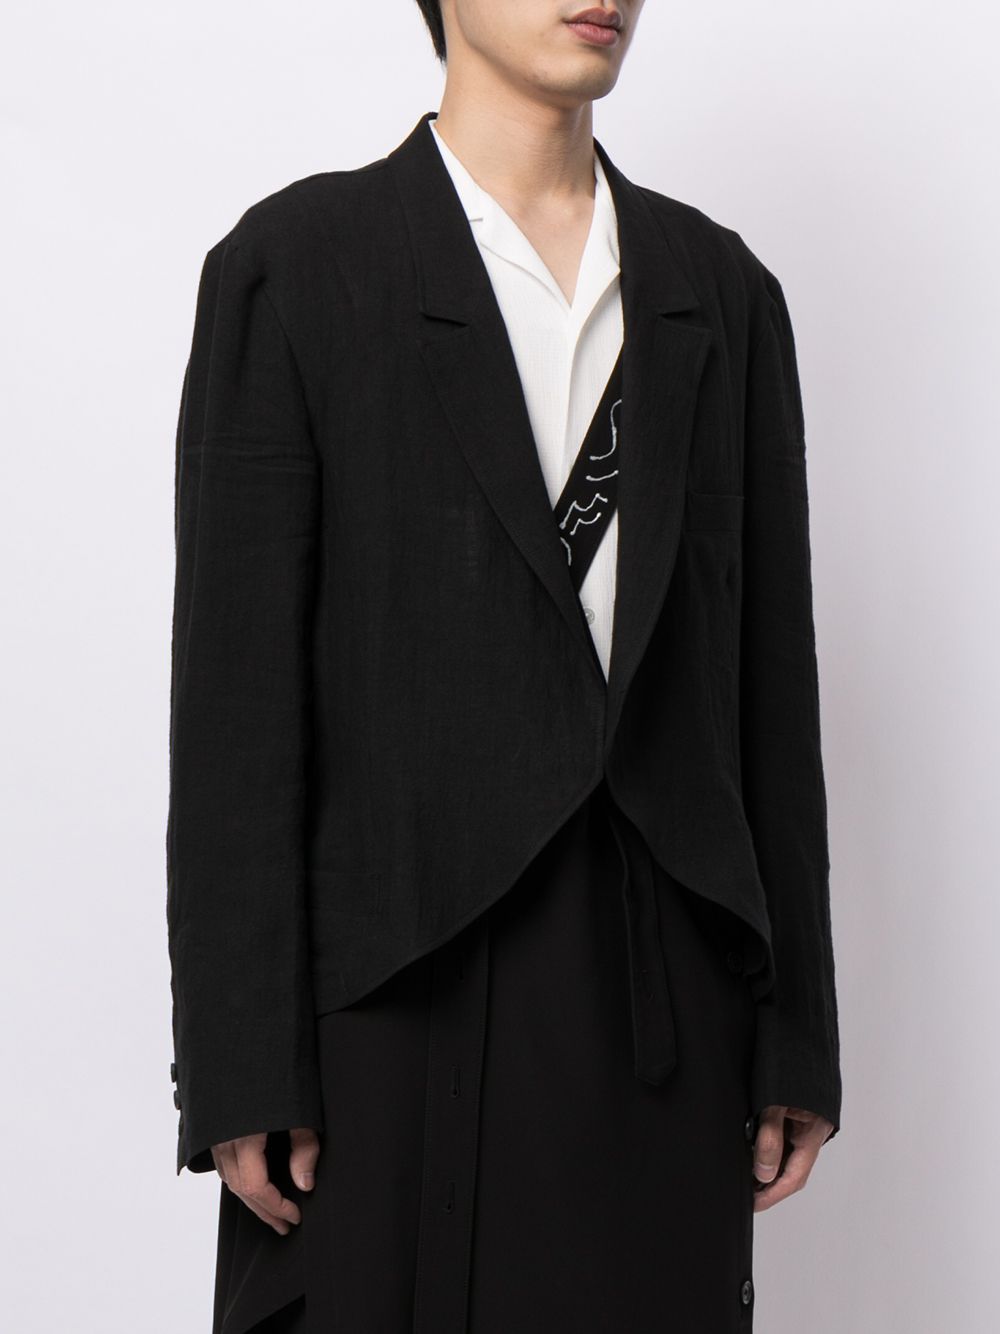 фото Yohji yamamoto пиджак с принтом